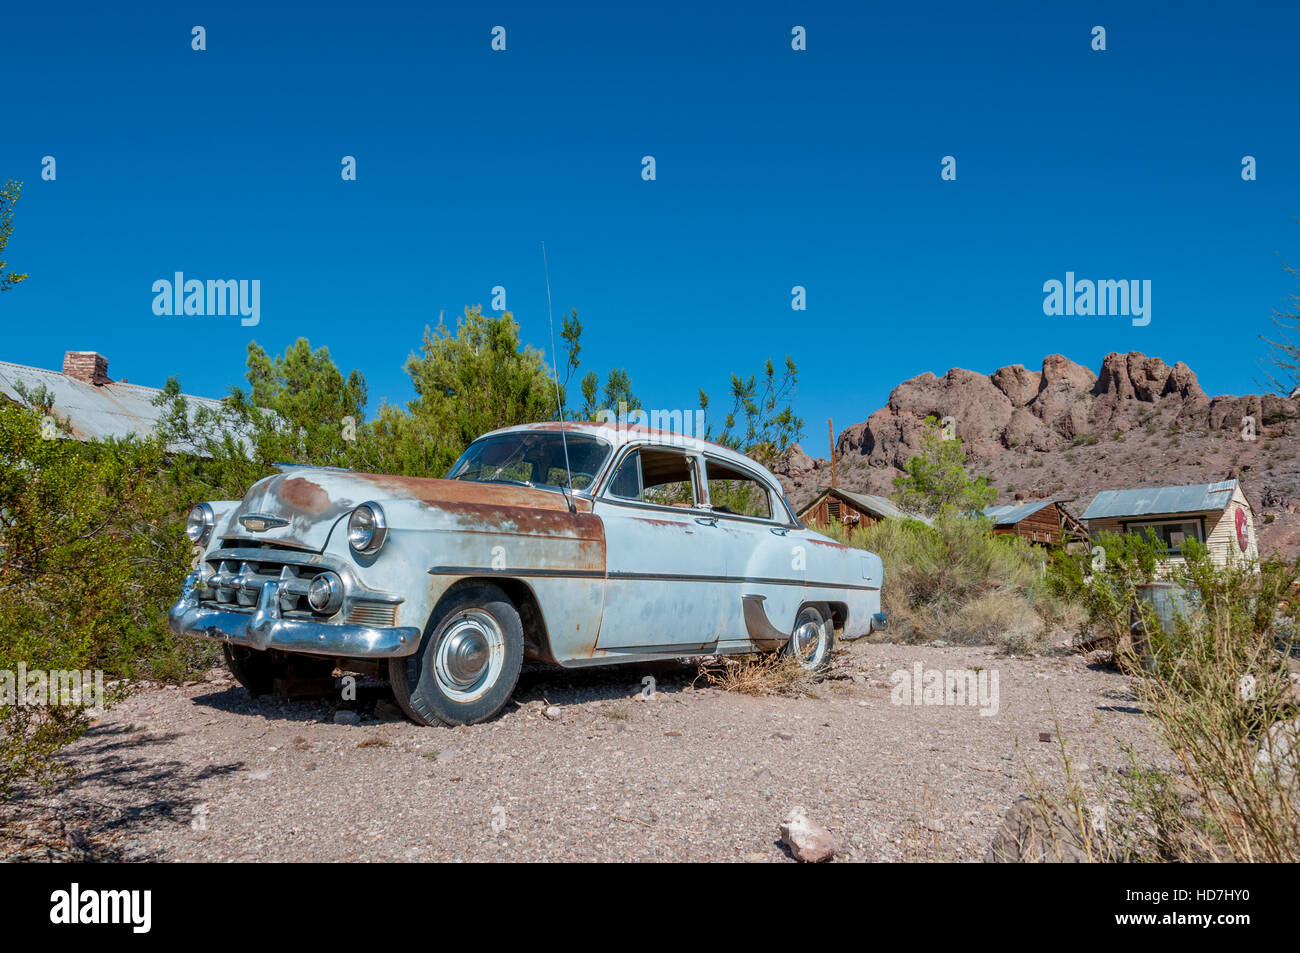 Anfang der 1950er Jahre festgesetzt Techatticup Mine in Nevada in der Nähe von Route 66 Chevy Auto hellblau mit Rost in Wüste Geisterstadt und Film aufgegeben. Stockfoto